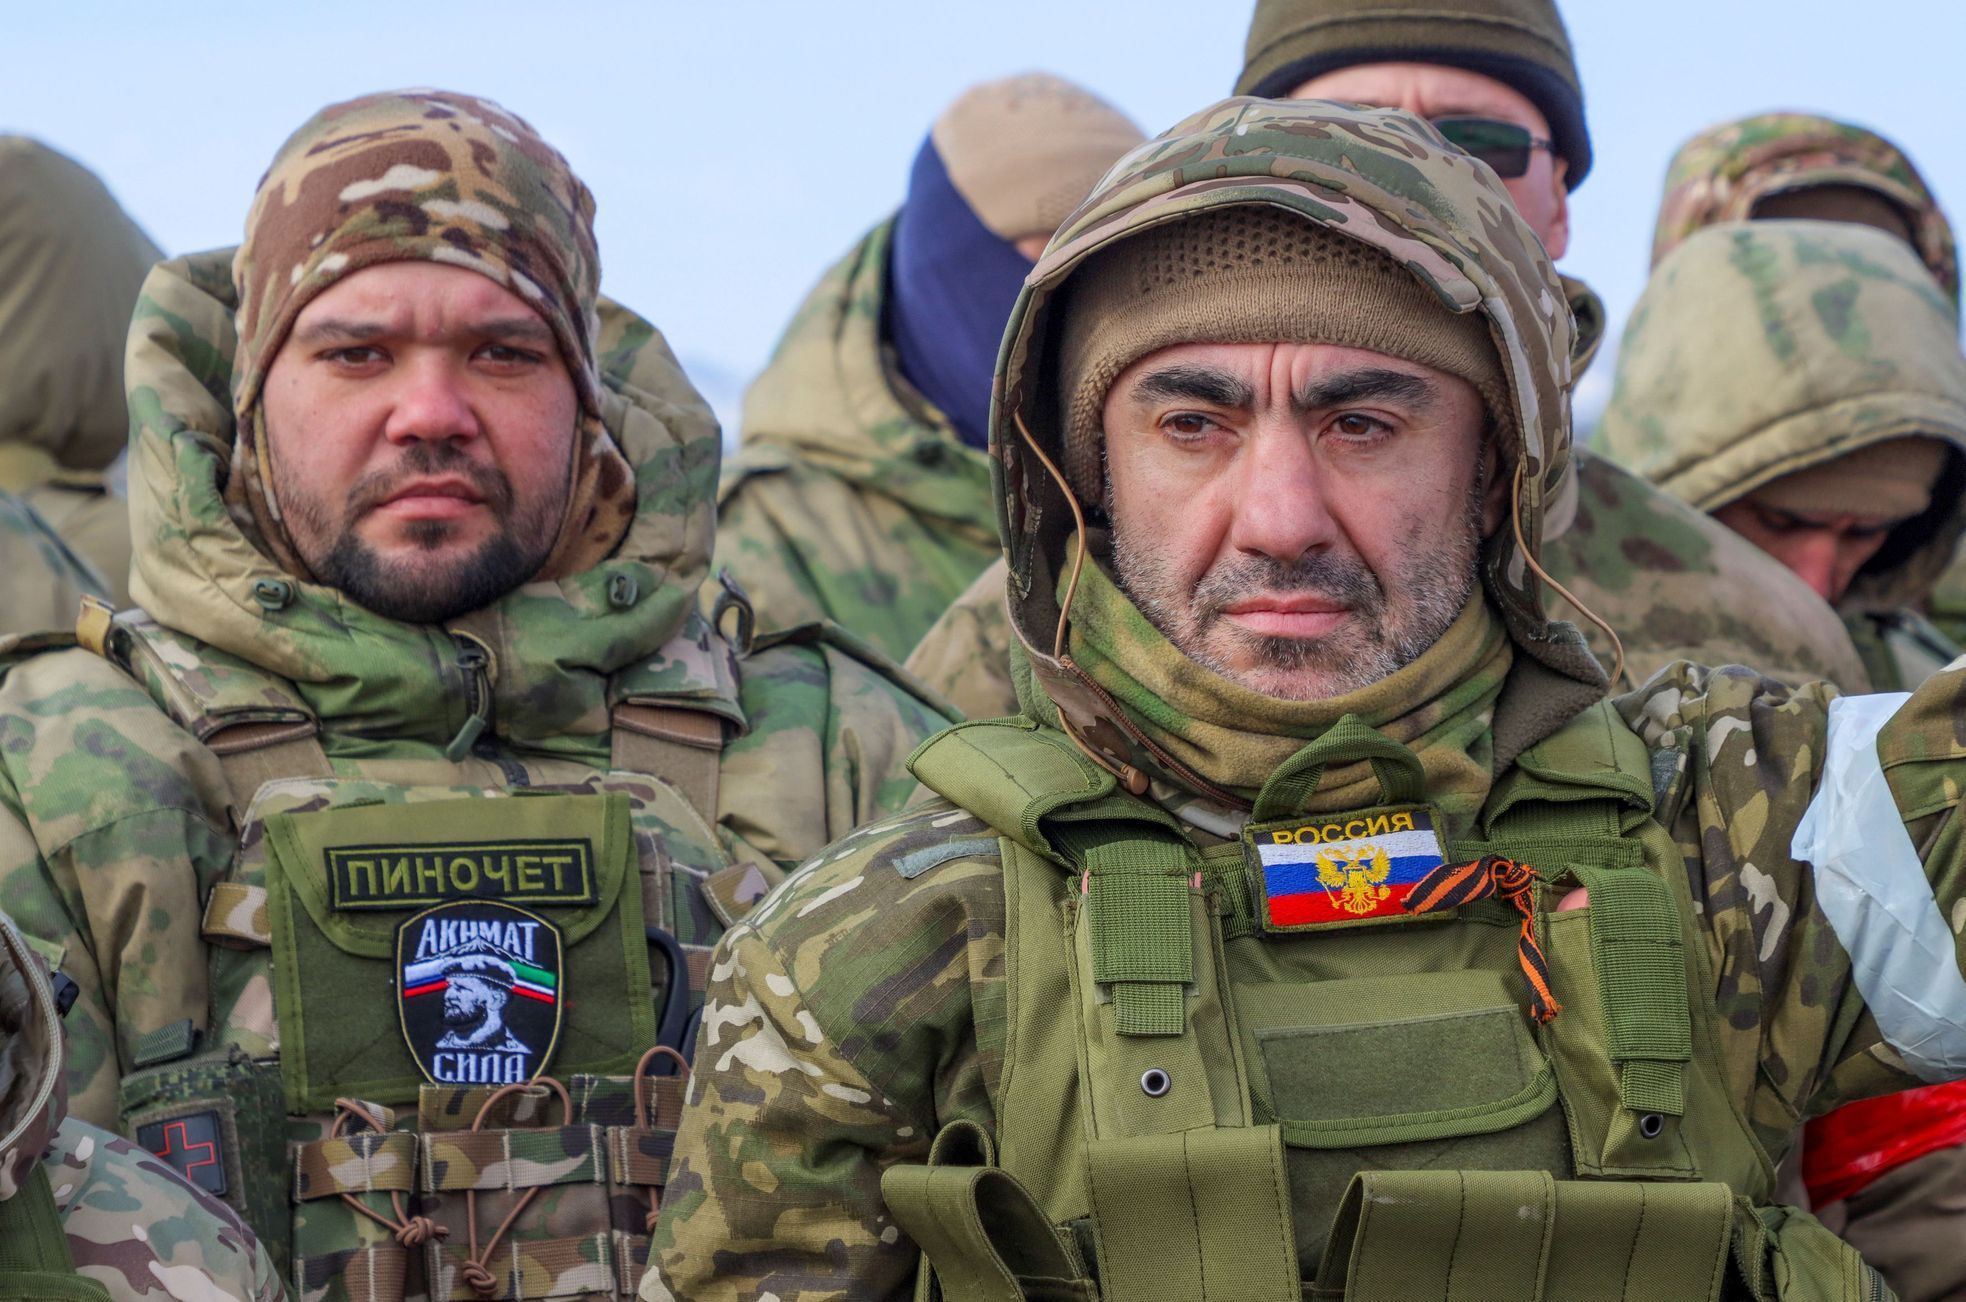 Rusko armáda Ukrajina